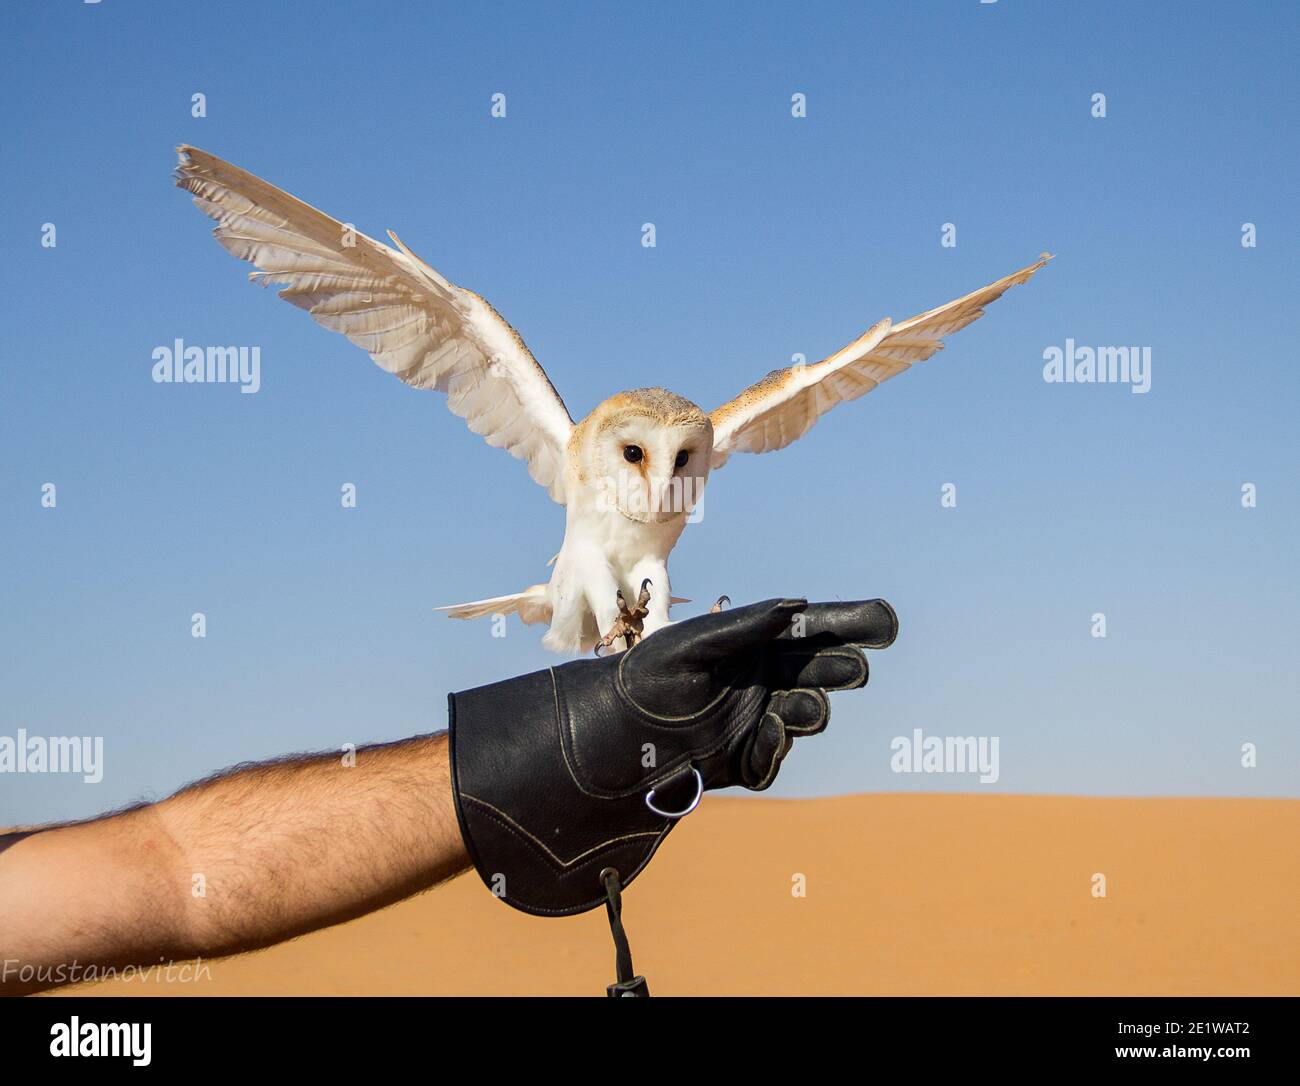 Stalleule fliegt auf einen Handschuh zu, um seinen Fang zu bekommen In der arabischen Wüste Stockfoto